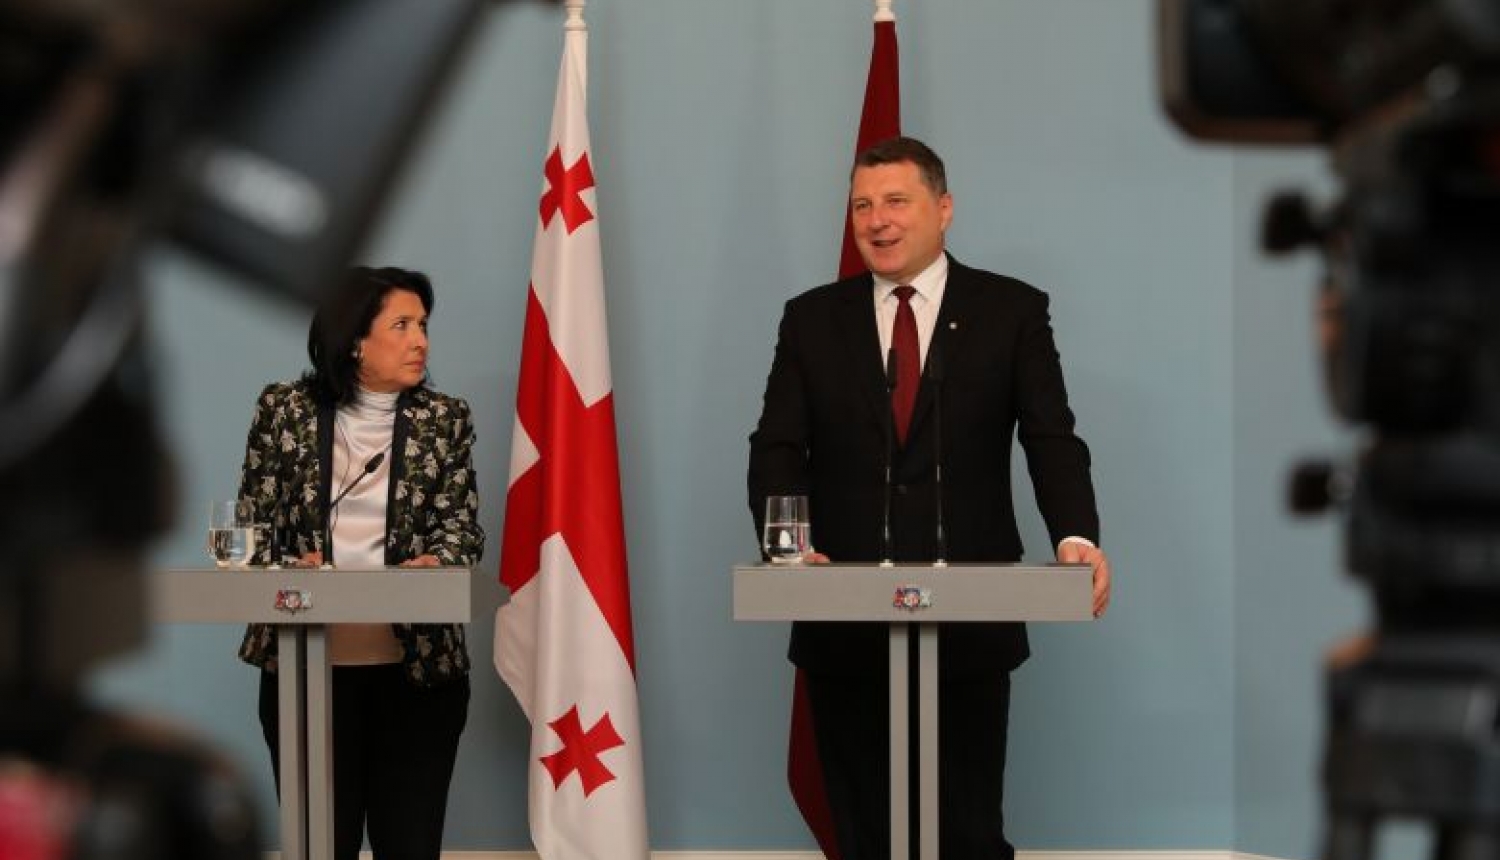 Valsts prezidenta Raimonda Vējoņa preses paziņojums pēc tikšanās ar Gruzijas prezidenti Salomi Zurabišvili